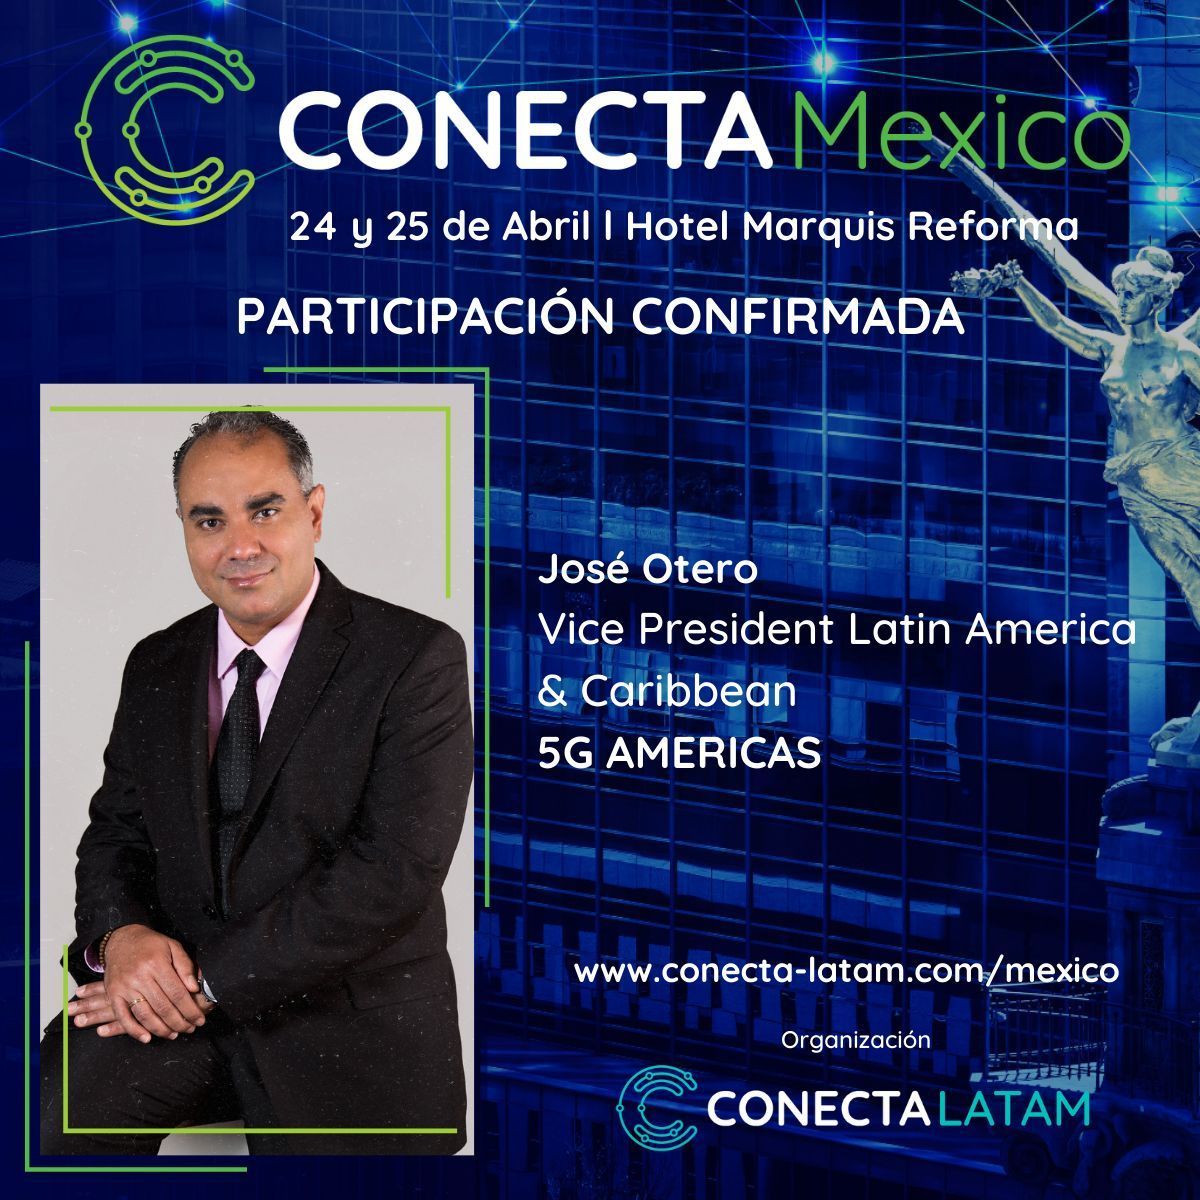 En @5GA_CALA te invitamos a unirte a CONECTA MÉXICO de @conecta_latam👇 📅 24 y 25 de abril📍Hotel Marquis Reforma, Ciudad de México ☑️Nuestro VP, @Jose_F_Otero, es uno de los oradores confirmados. #ConectaMexico #Telecom #5G #ConectaLatam #MásINFO en🔗buff.ly/3TV7VzN